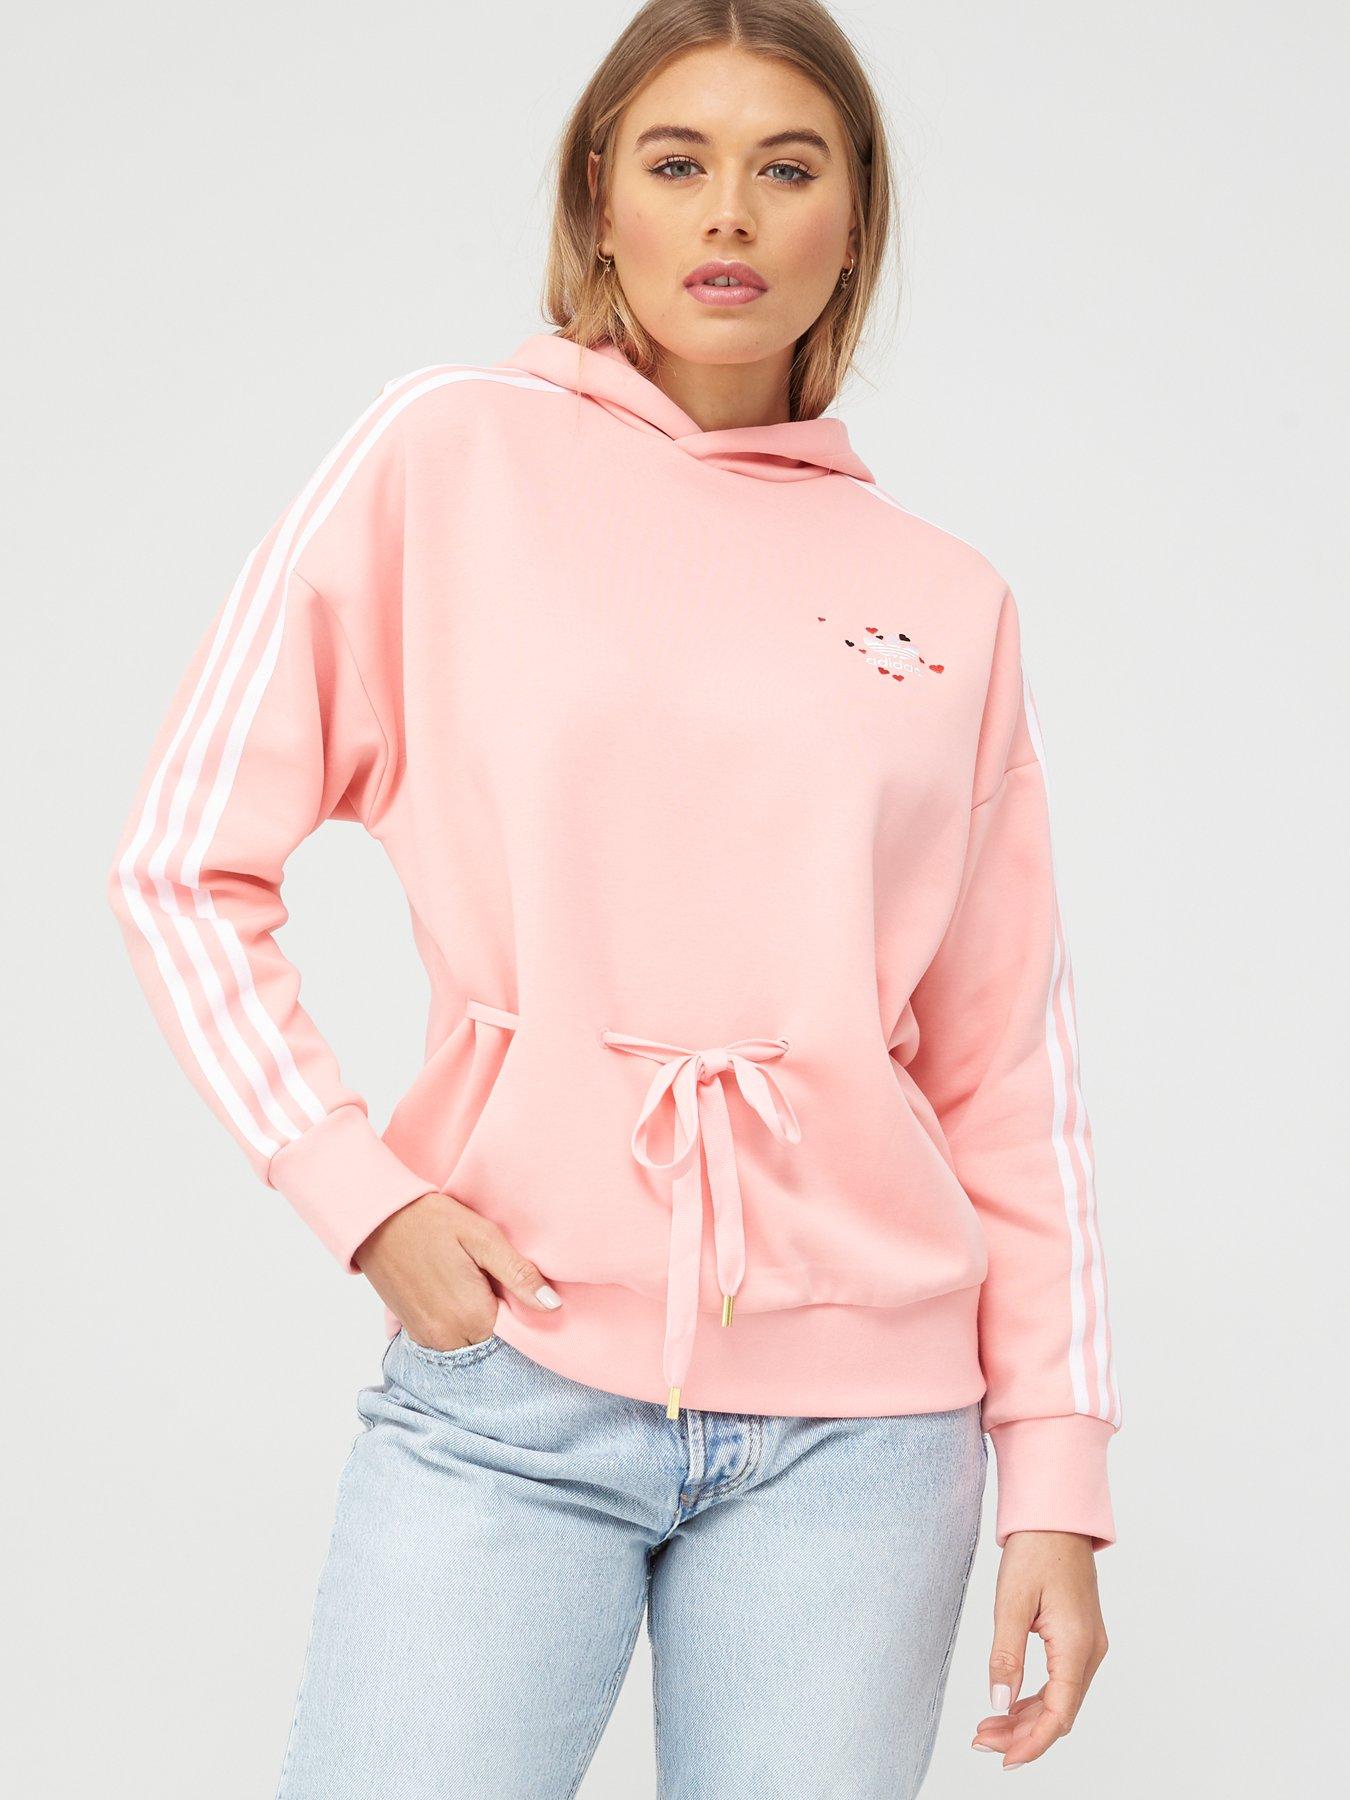 womens adidas hoodie pink